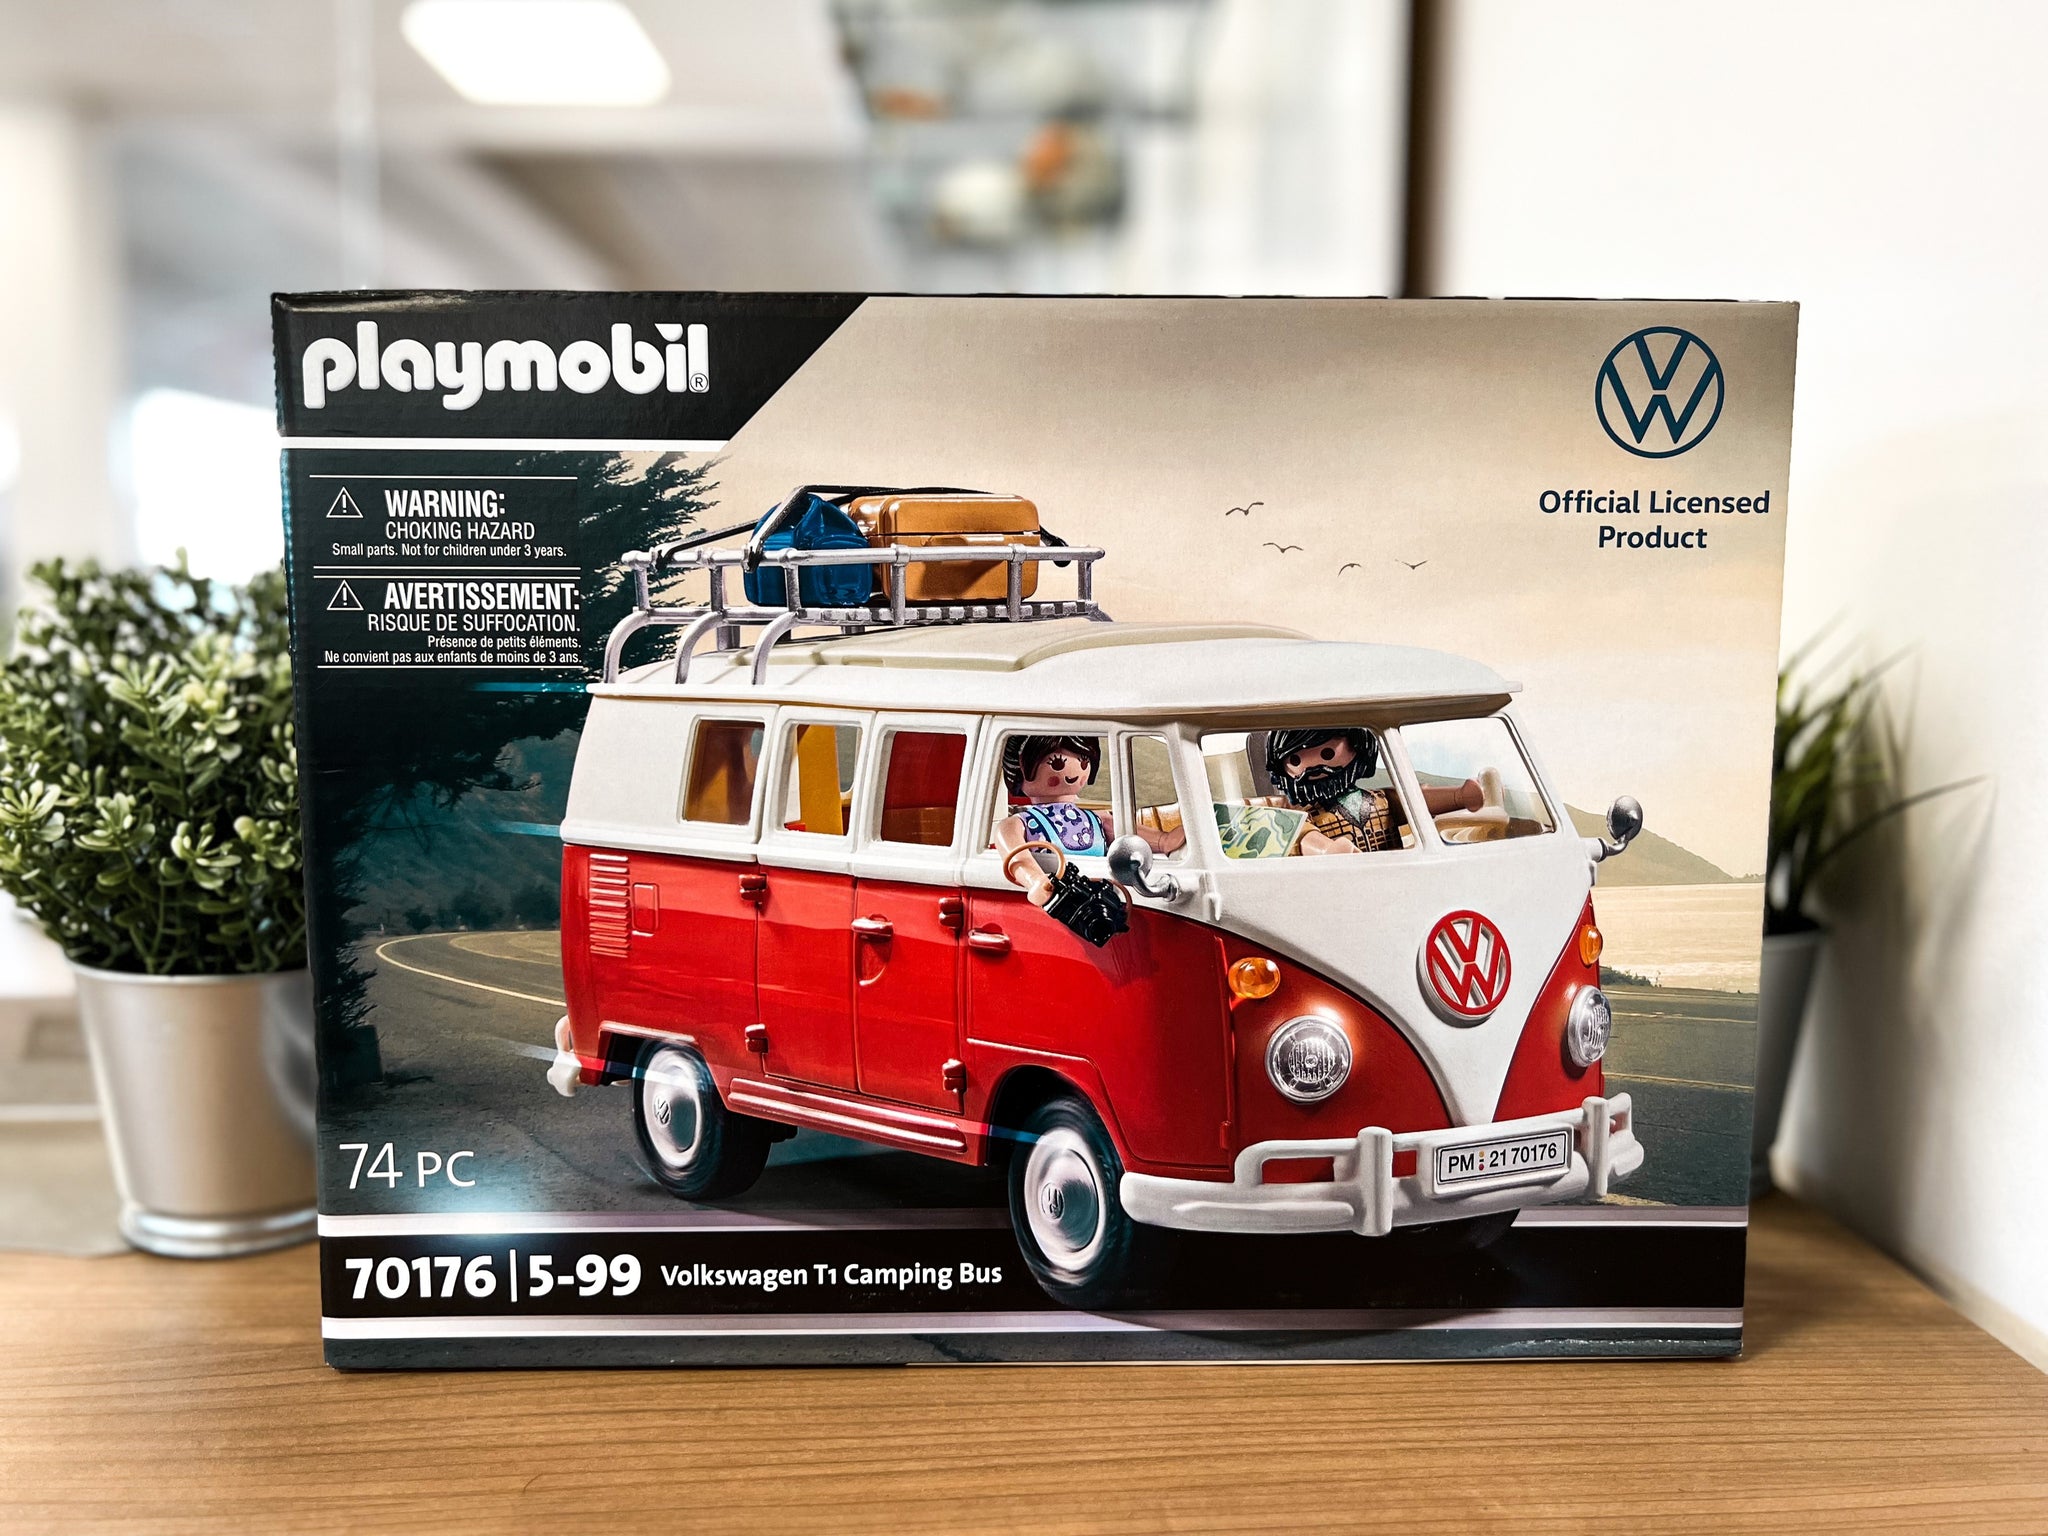 Kunstleder maßge schneiderte Kofferraum matte für Volkswagen VW Polo  2013-2017 2013-2018 2013-2018 Autozubehör